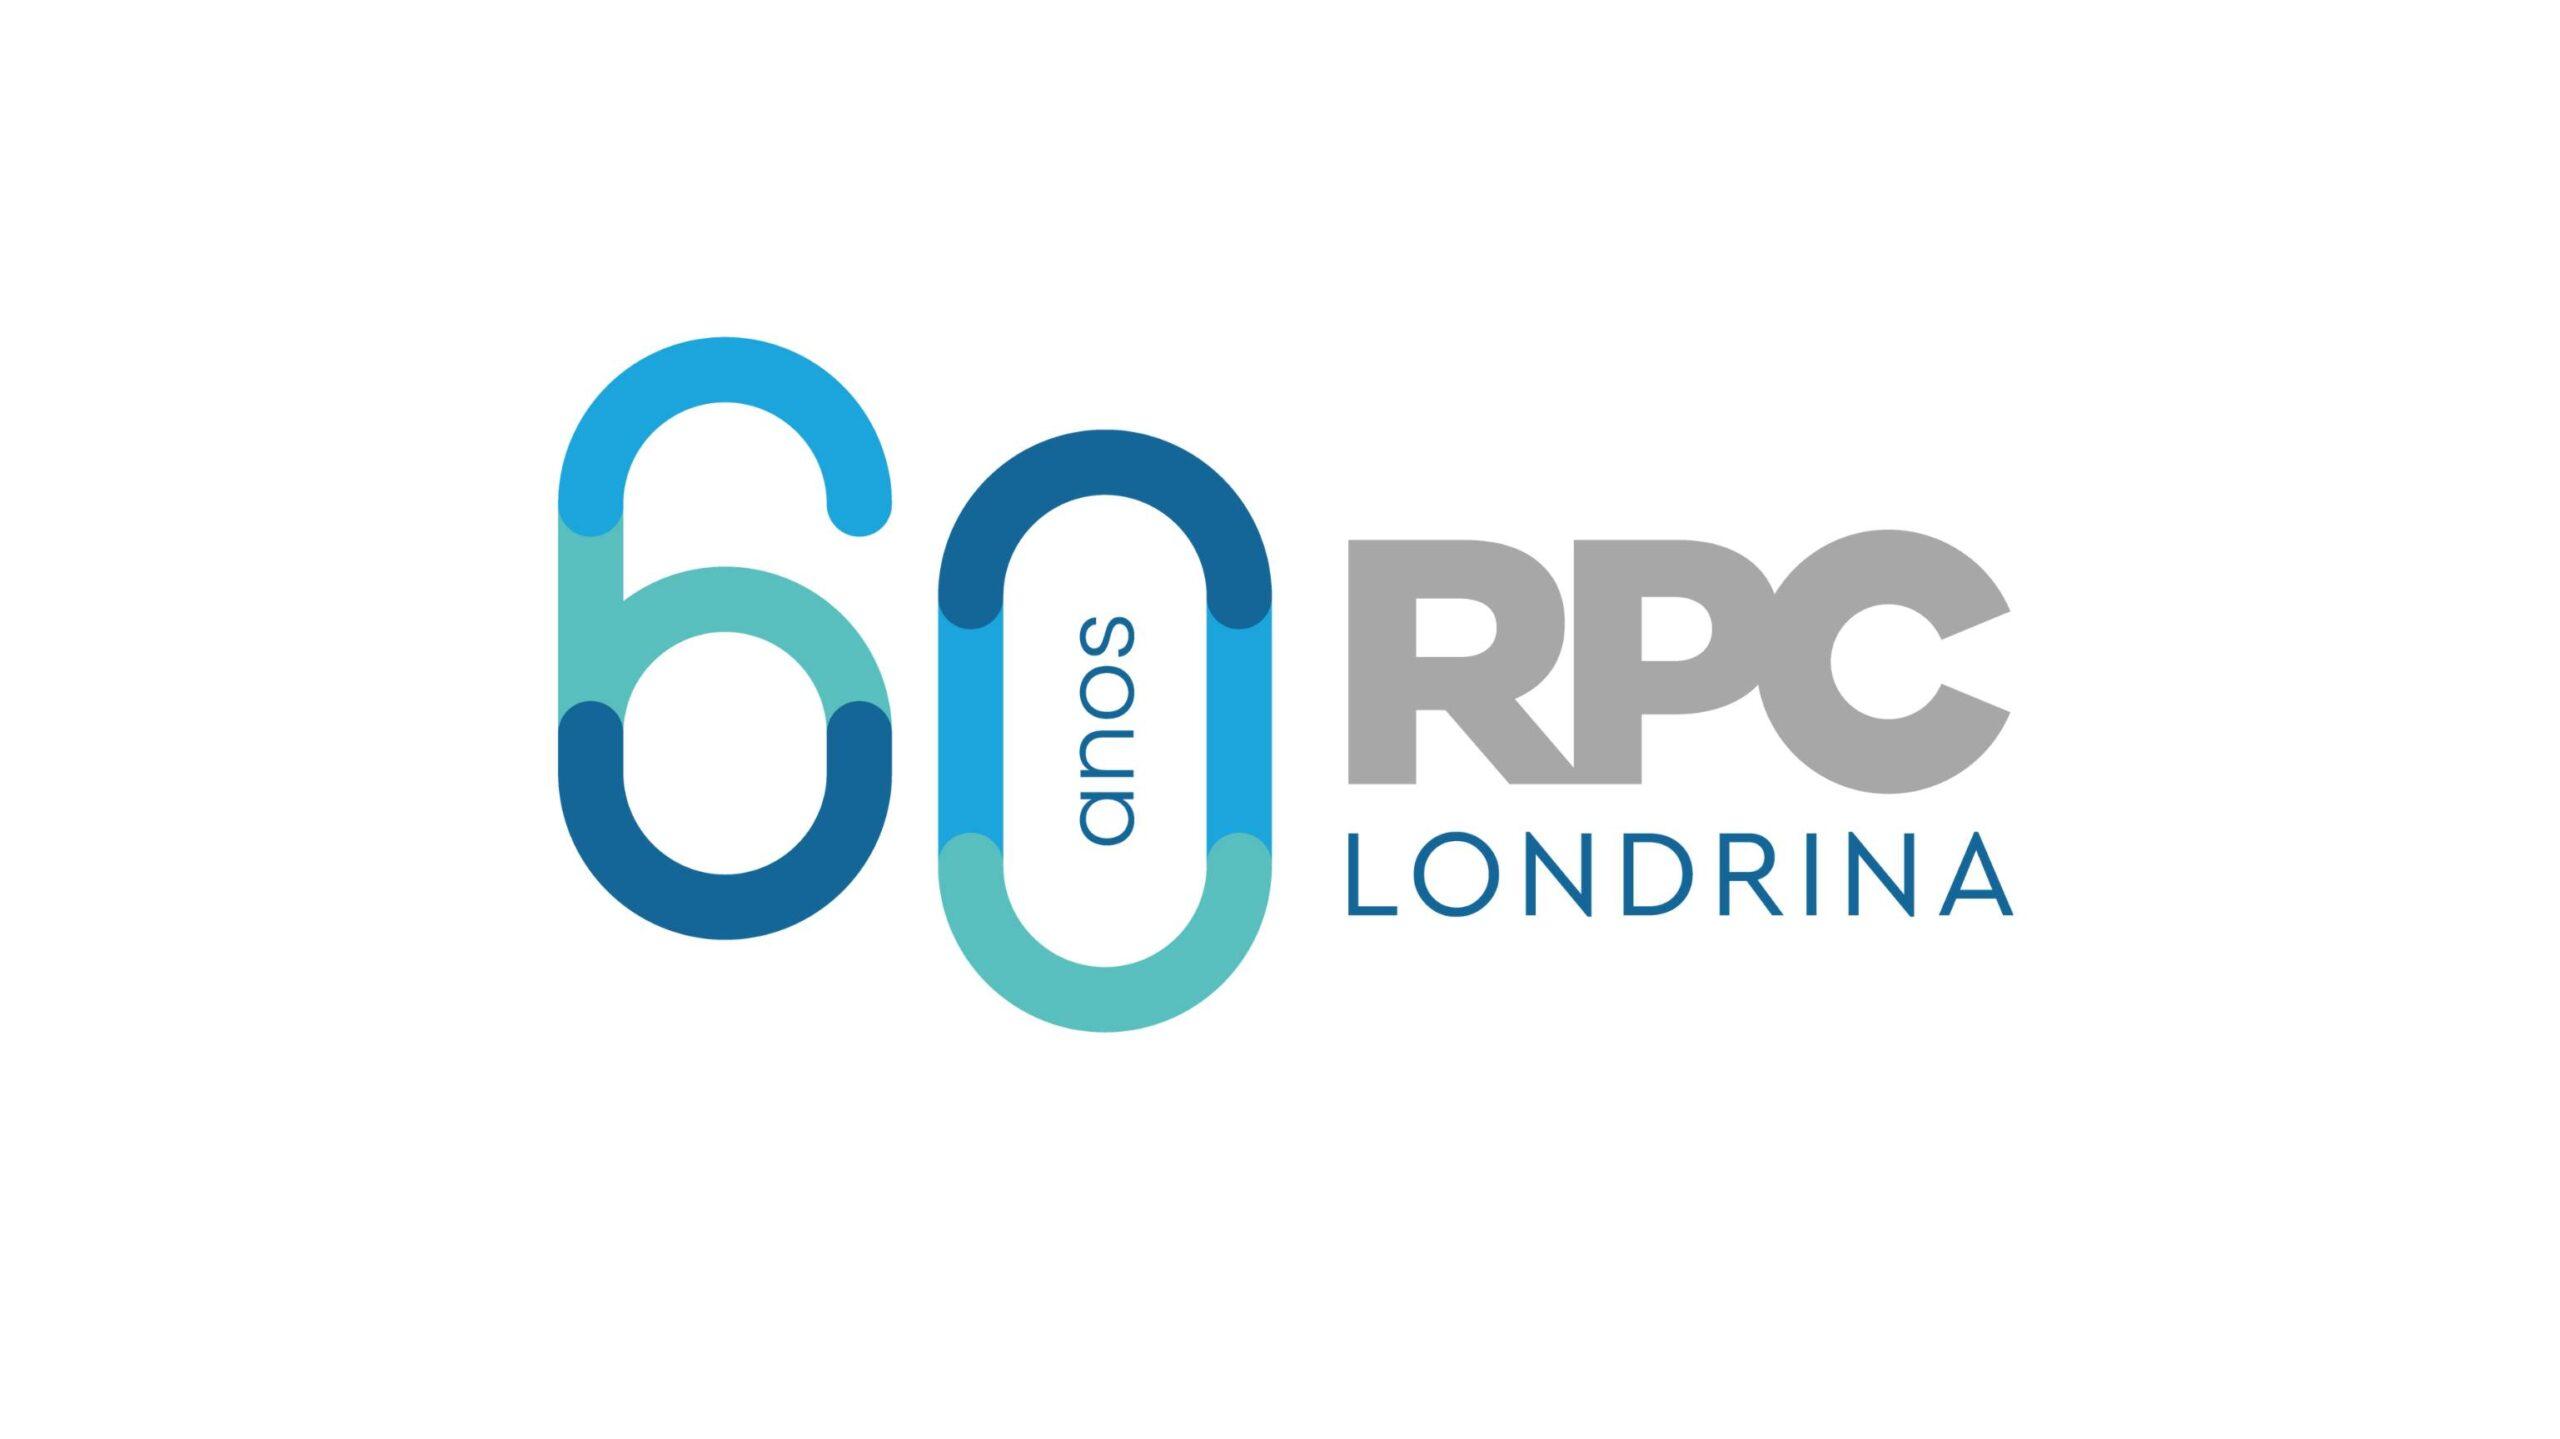 60 anos RPC londrina